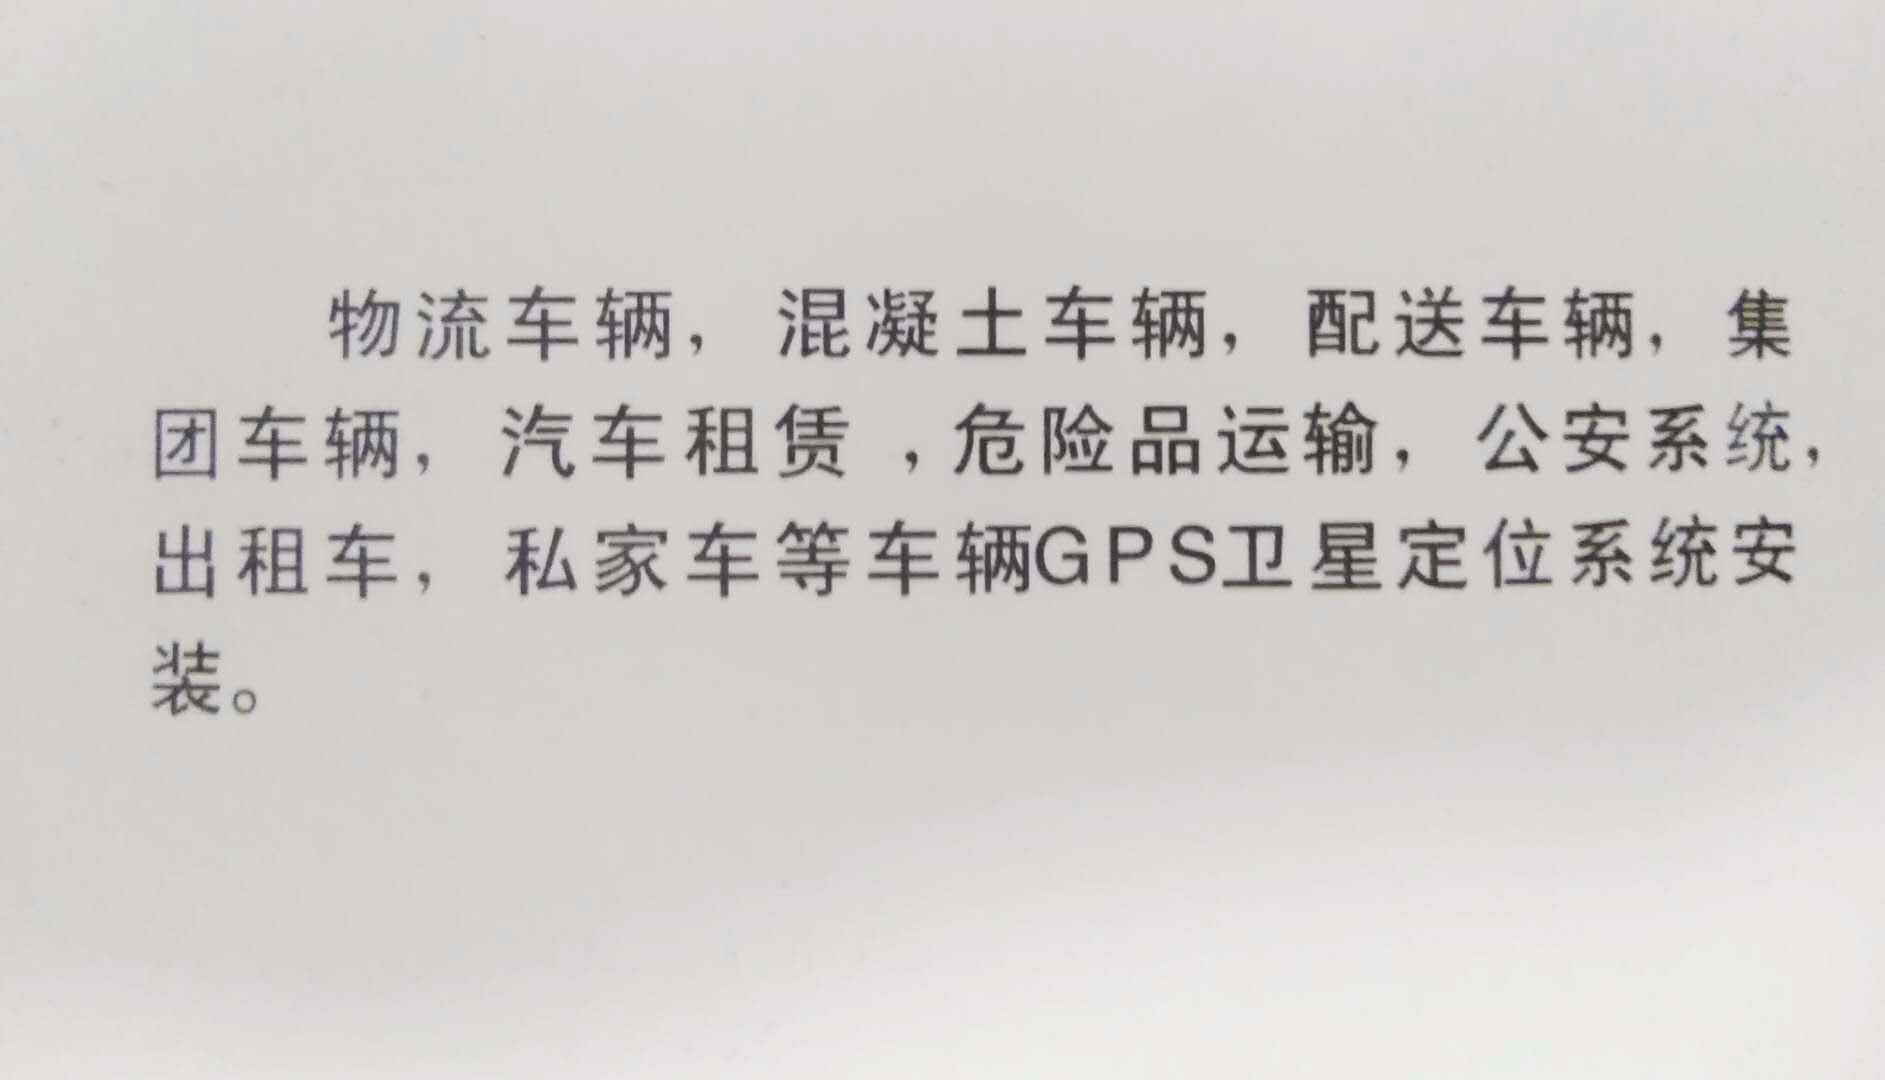 天津gps车防盗监控系统,车辆GPS/北斗定位系统